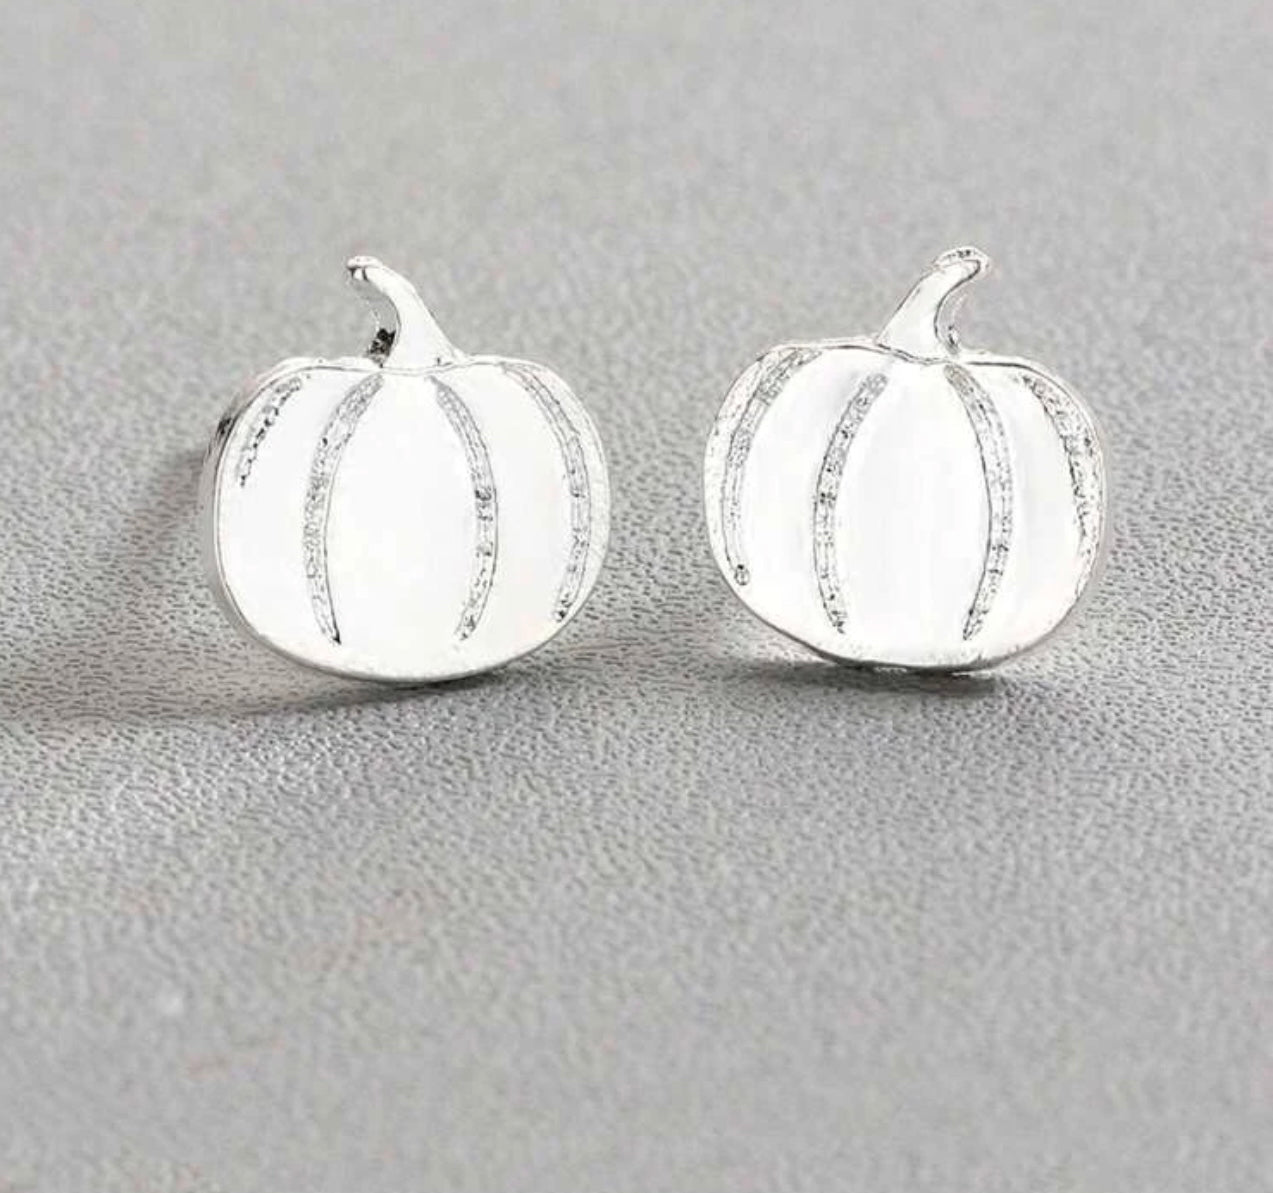 Pumpkin earrings silver